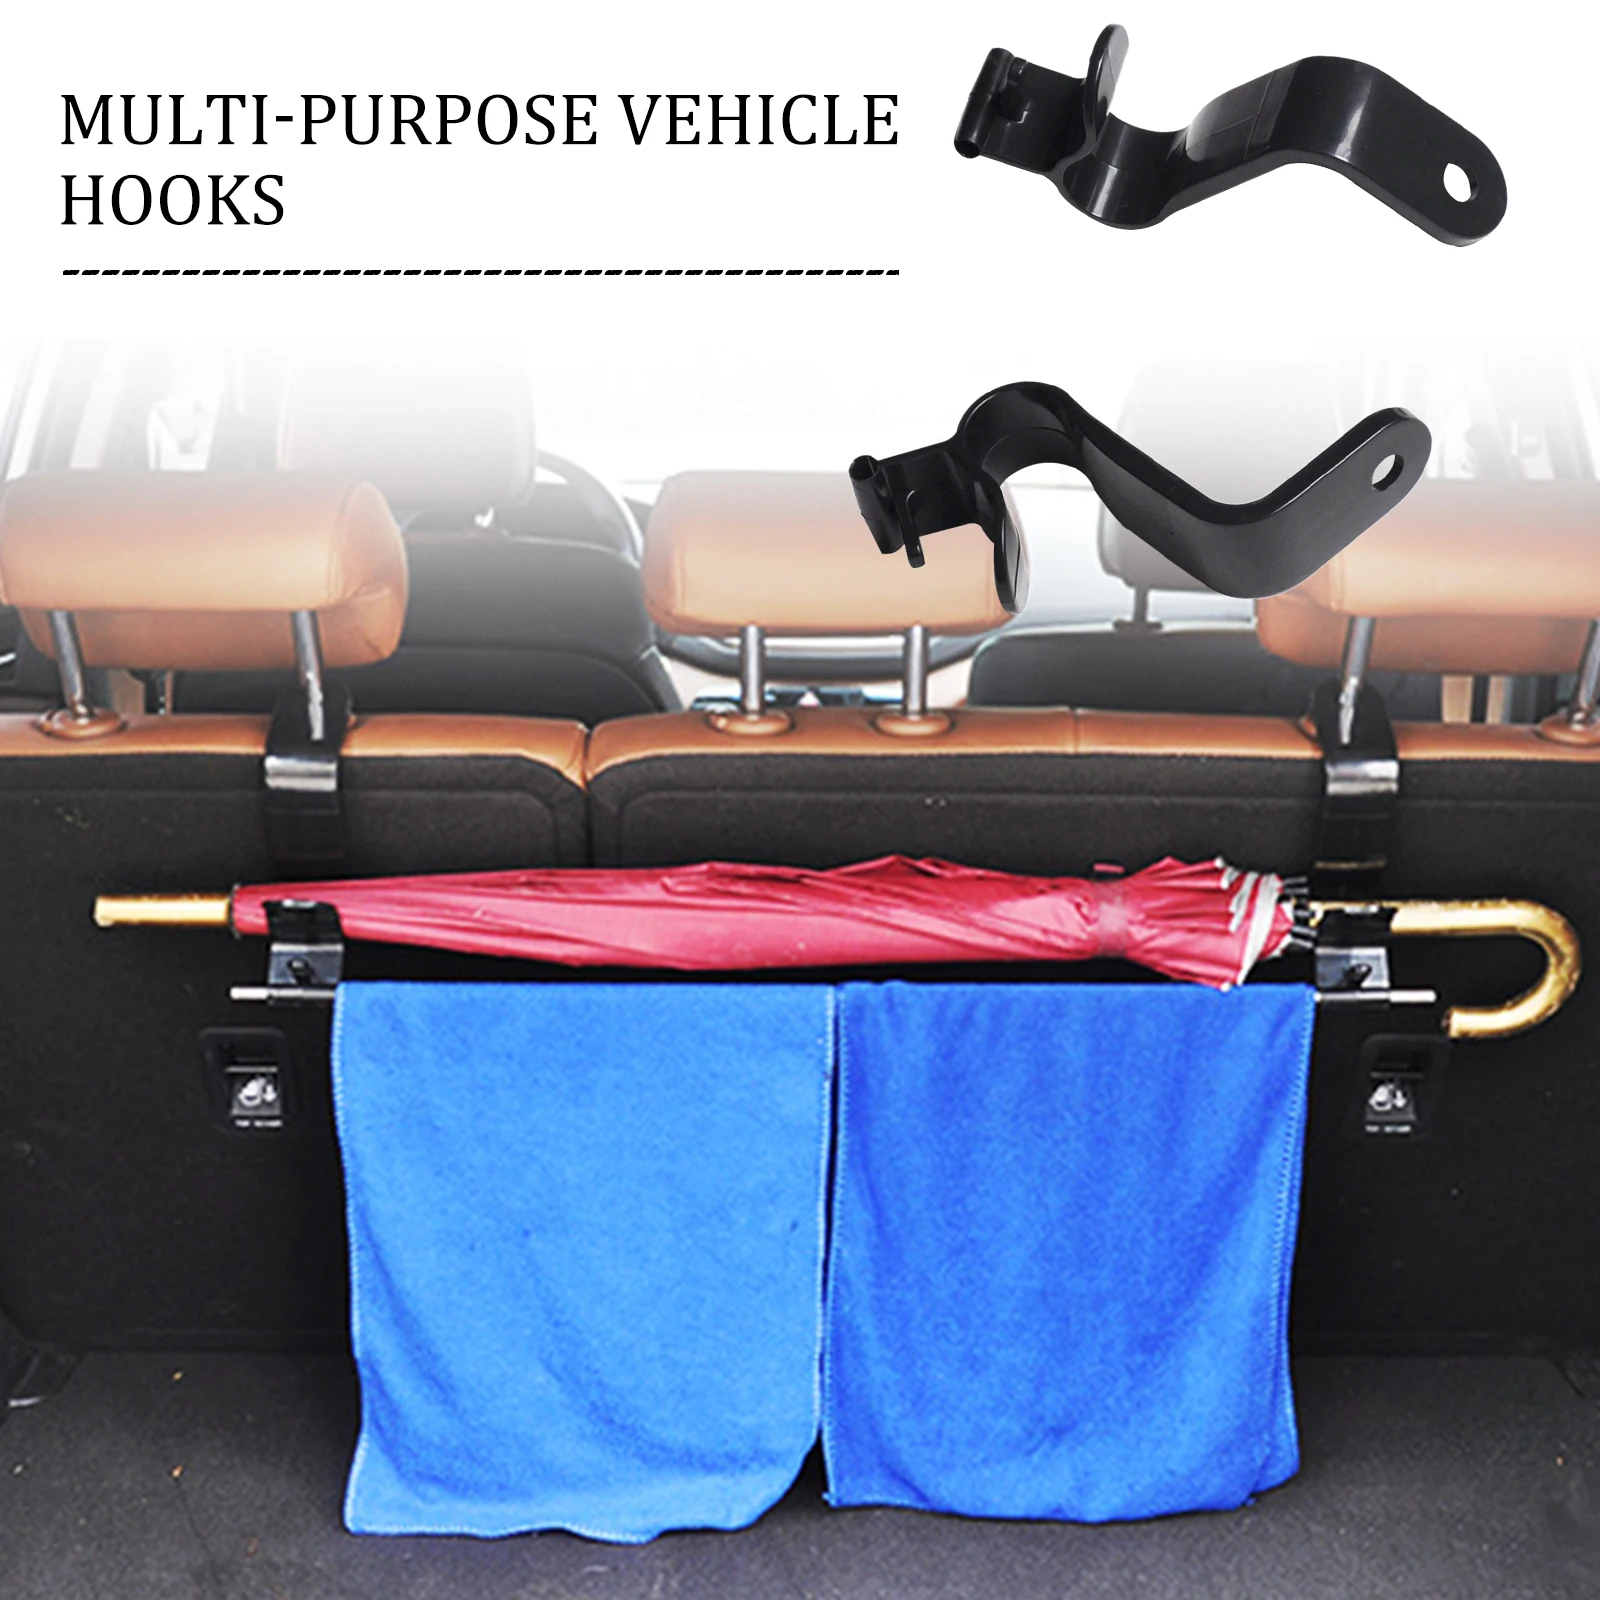 

2 Pcs Black Car Suv Seat Back Hook Hanger Organizer Headrest Holder Backrest Hook 20kg Load-bearing For Umbrella Handbag Towel